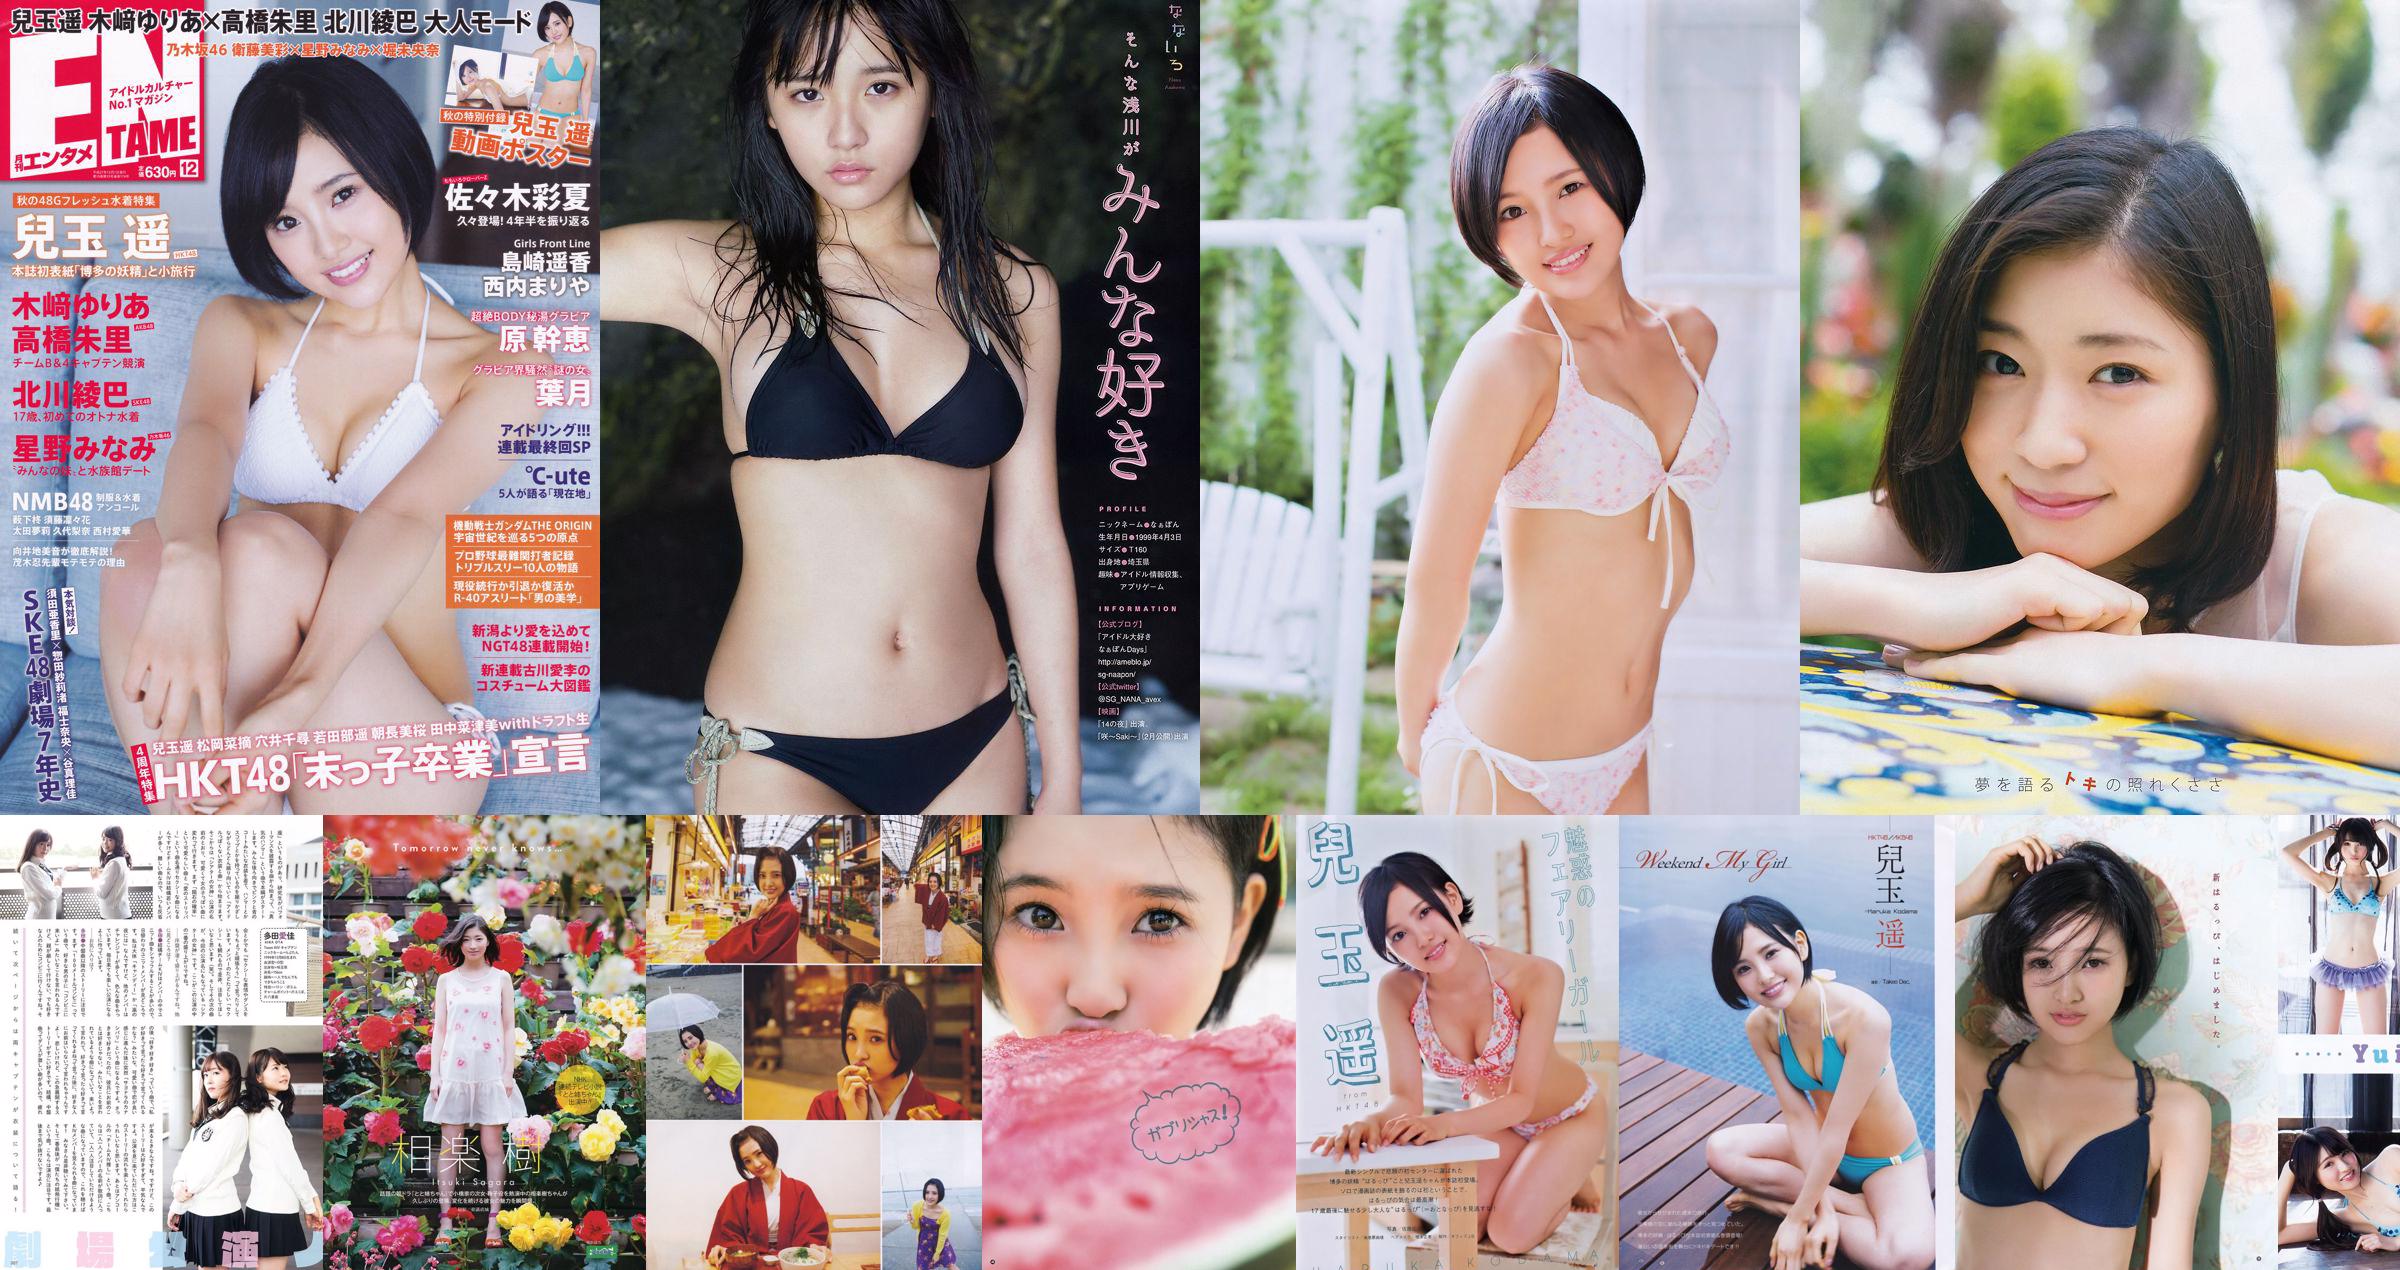 [Young Gangan] Haruka Kodama Rion 2015 No.23 Photo Magazine No.5256fc Página 7